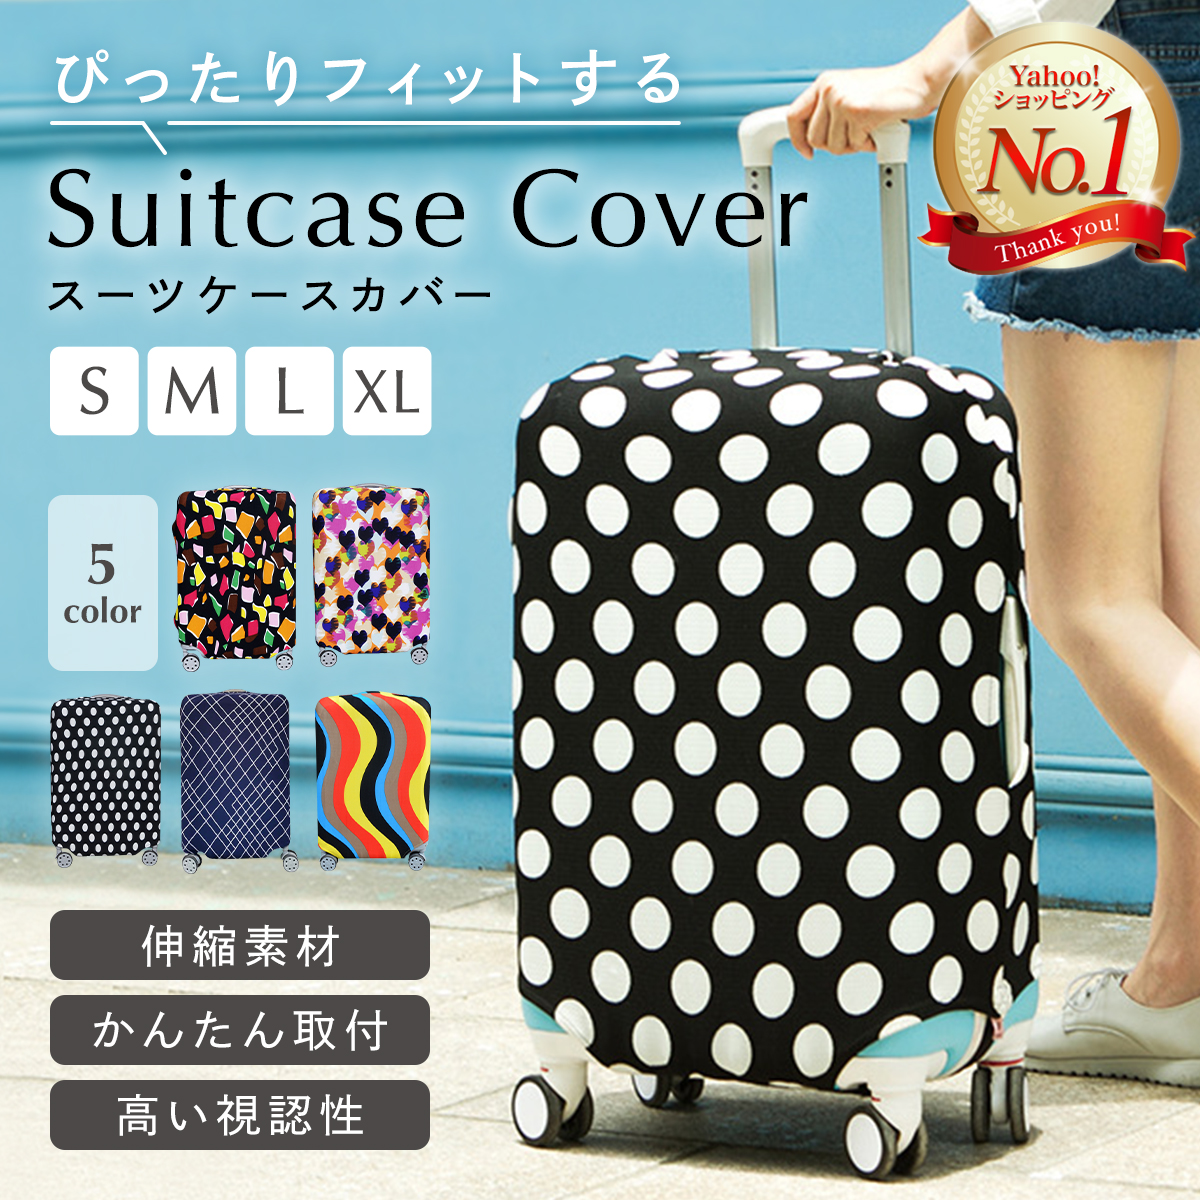 スーツケースカバー 伸縮 S M L Xl サイズ キャリーケースカバー キャリーバッグカバー スーツケースカバー スーツケース、キャリーバッグ 